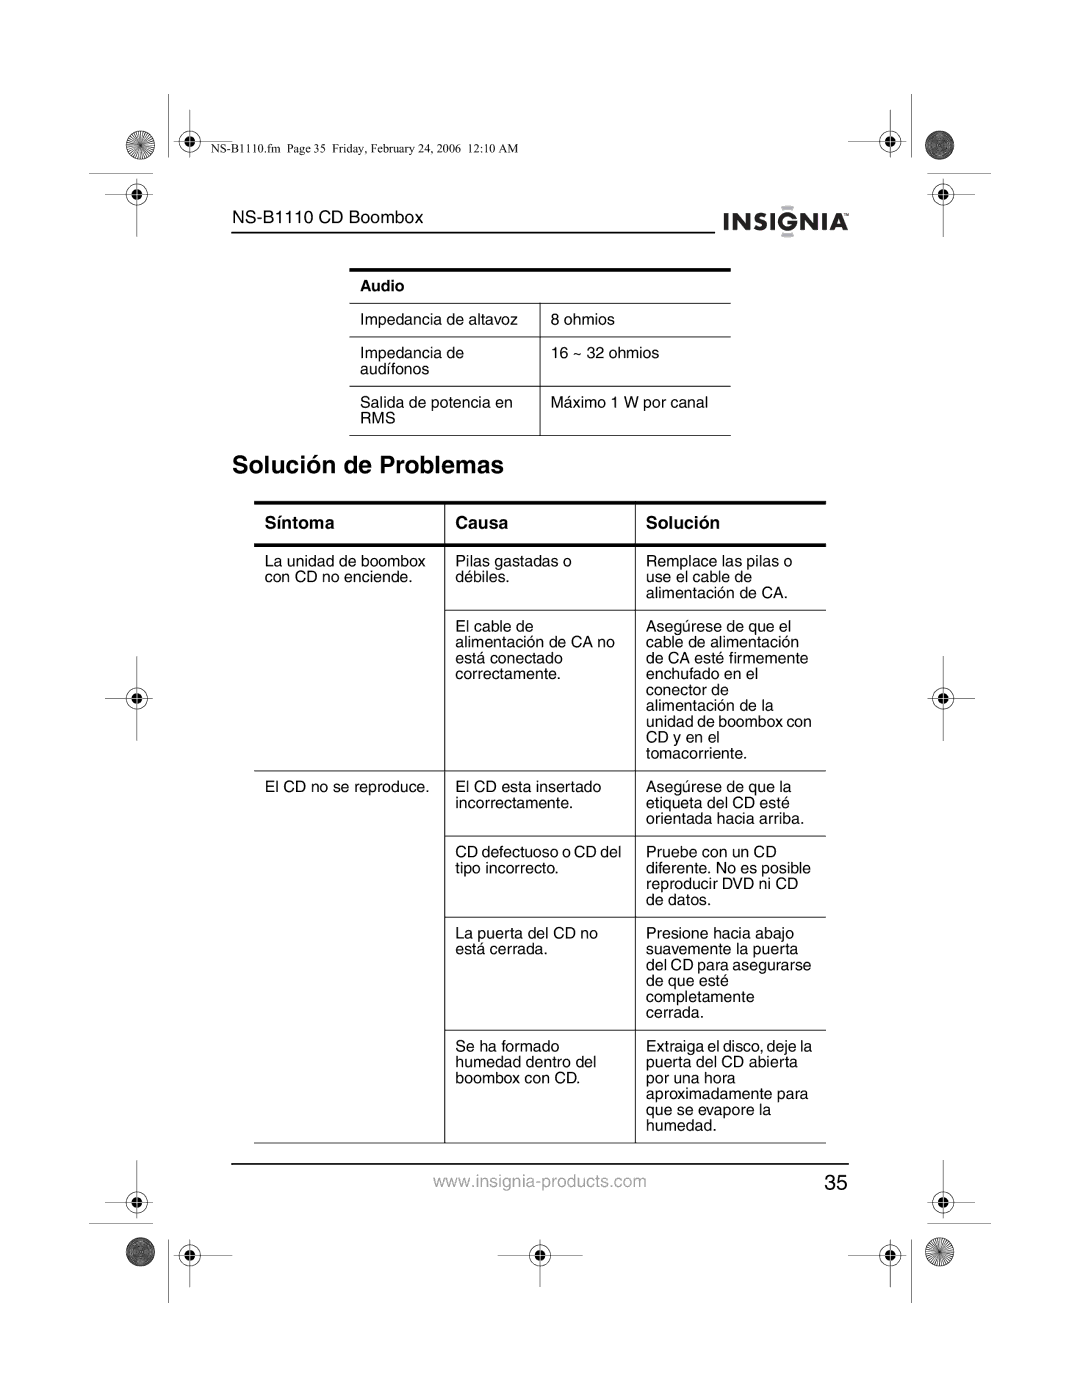 Insignia NS-B1110 manual Solución de Problemas, Síntoma Causa Solución 